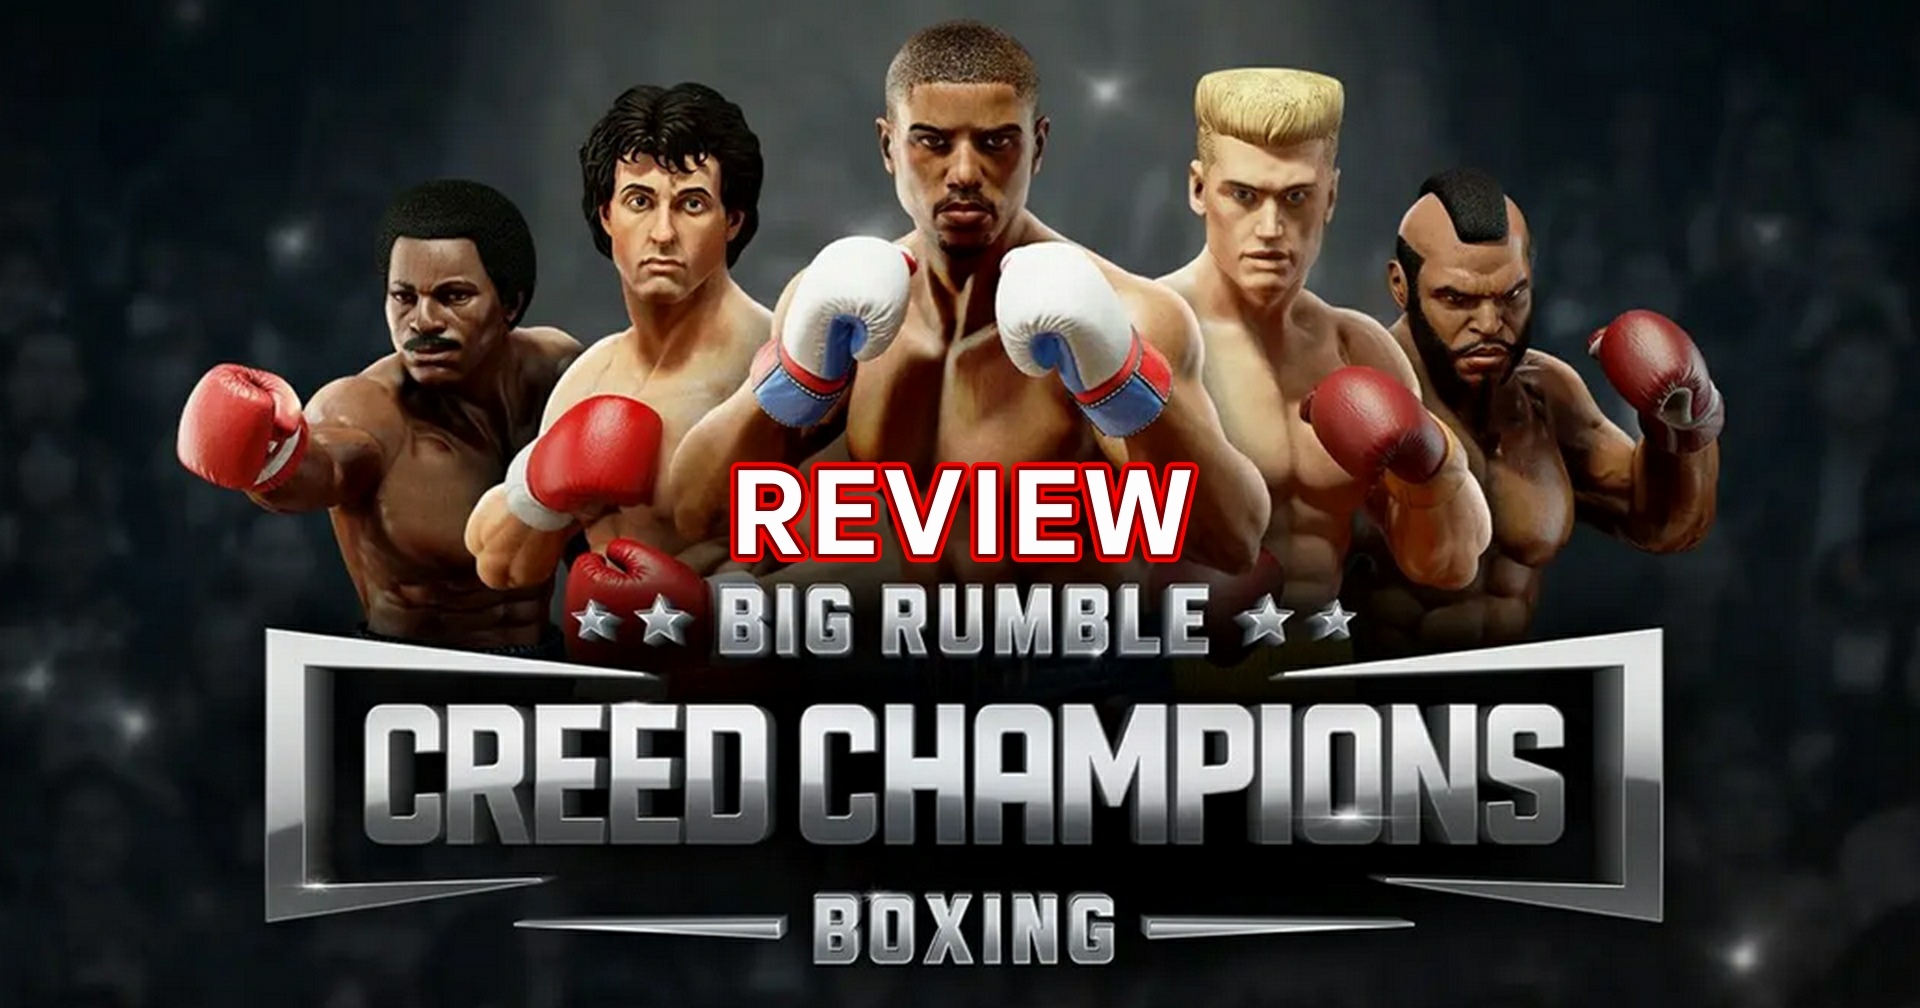 รีวิวเกม Big Rumble Boxing Creed Champions เกมชกมวยจากหนังในตำนาน